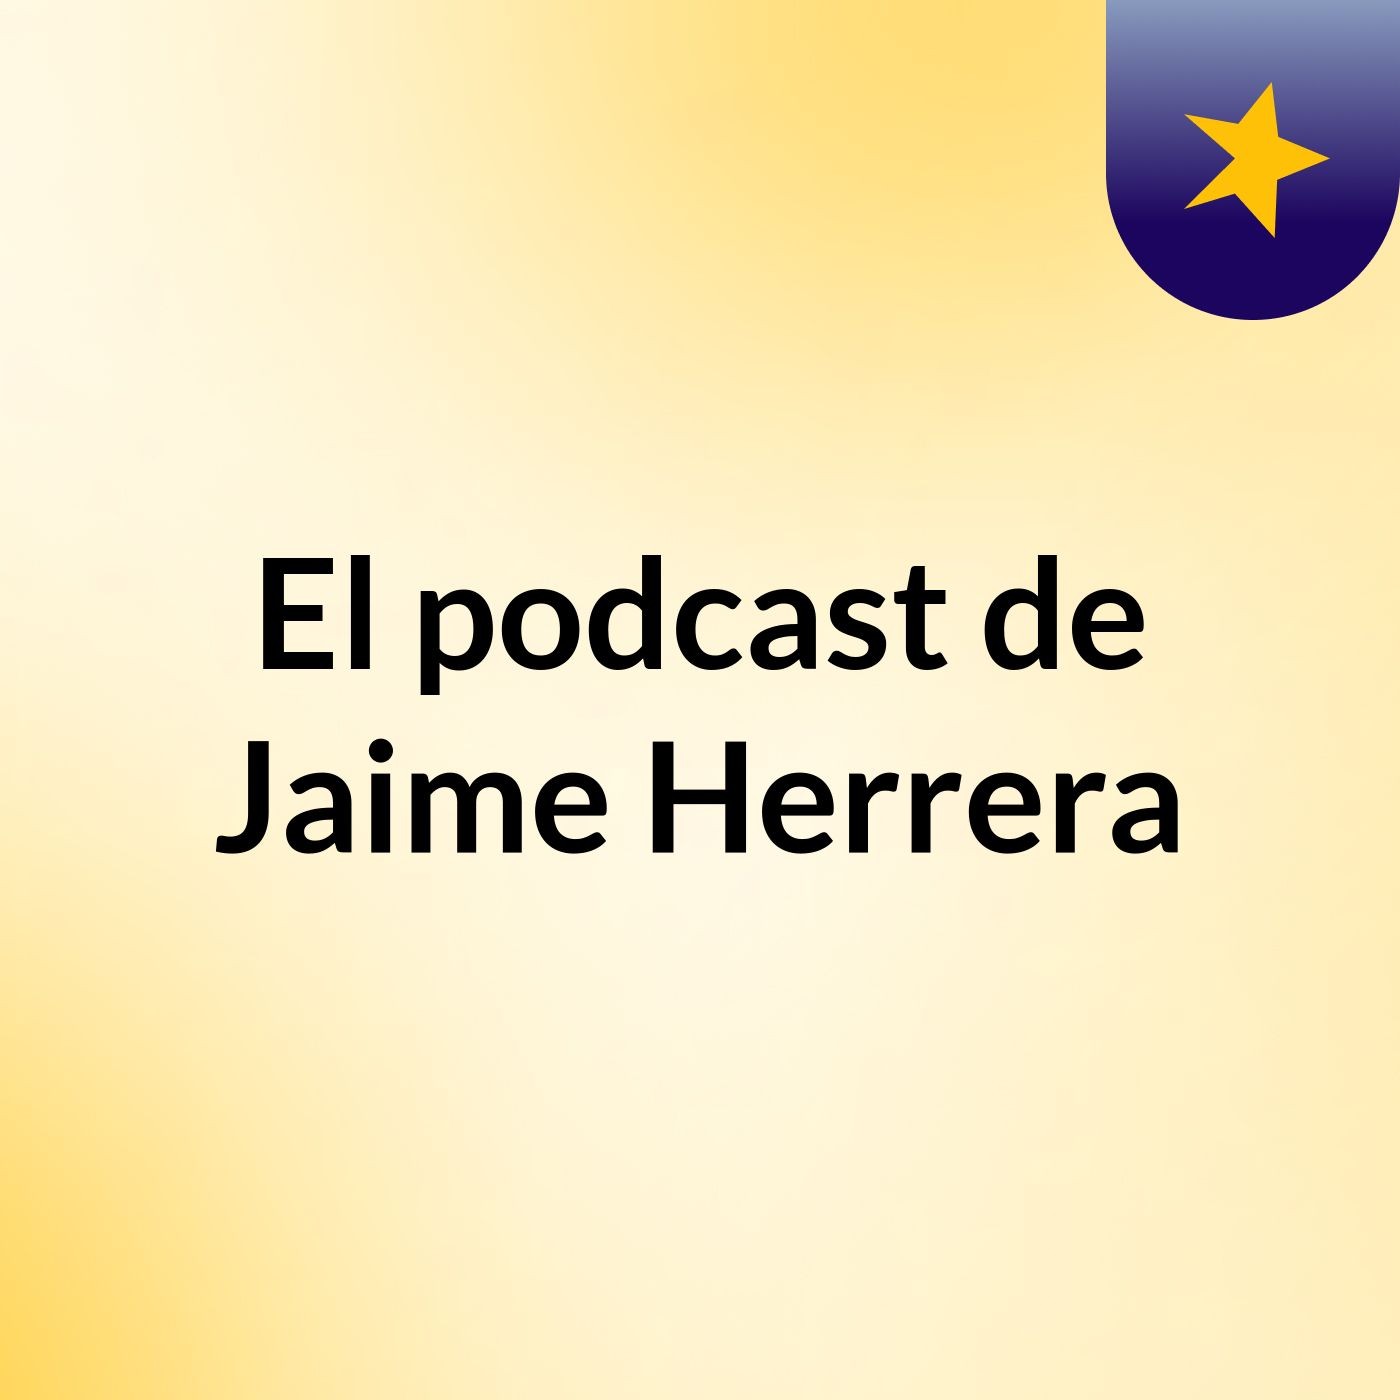 El podcast de Jaime Herrera